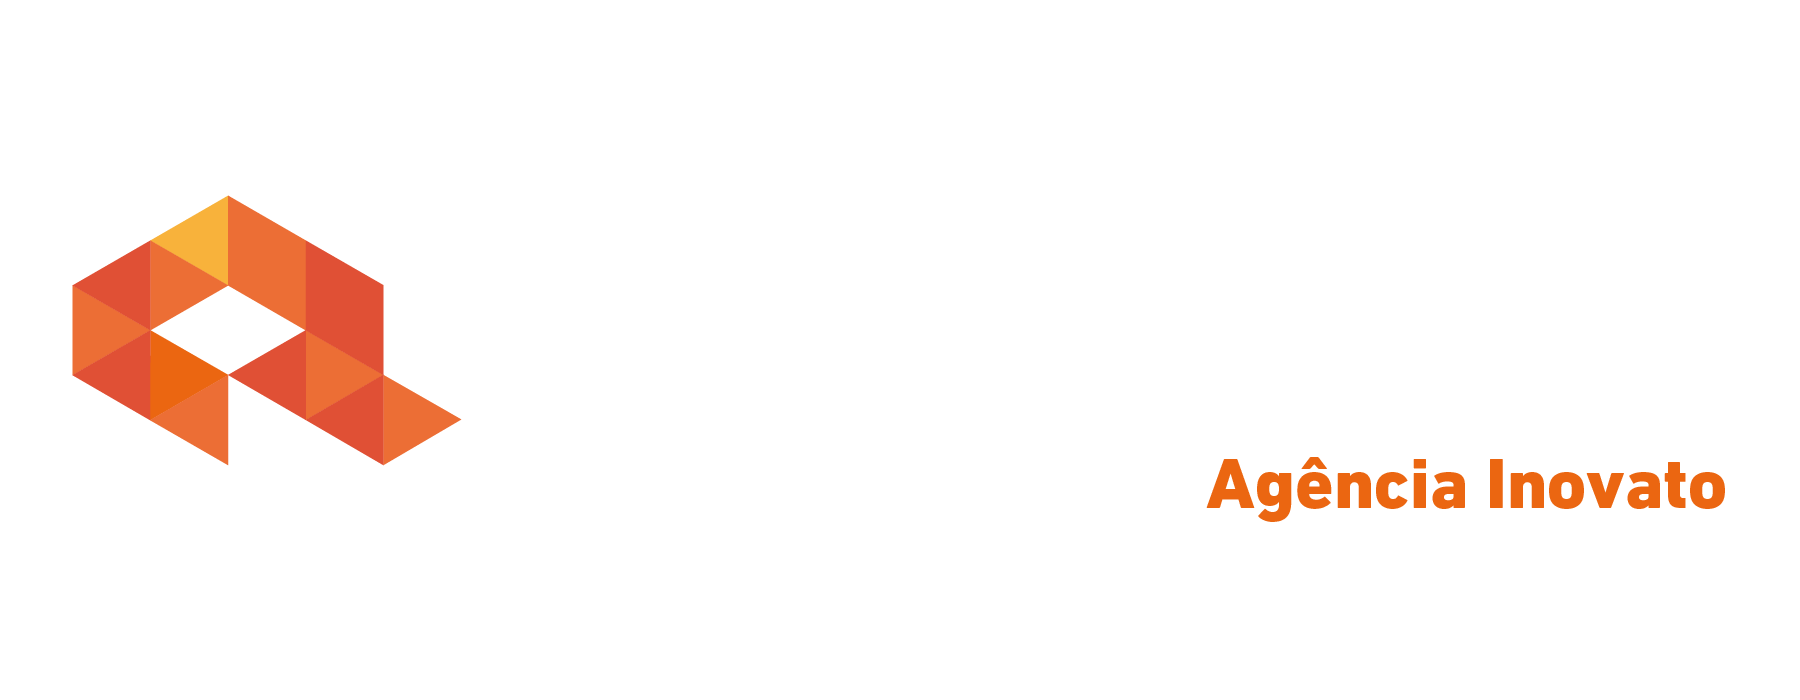 Logo crédito real Crédito Real Inovato